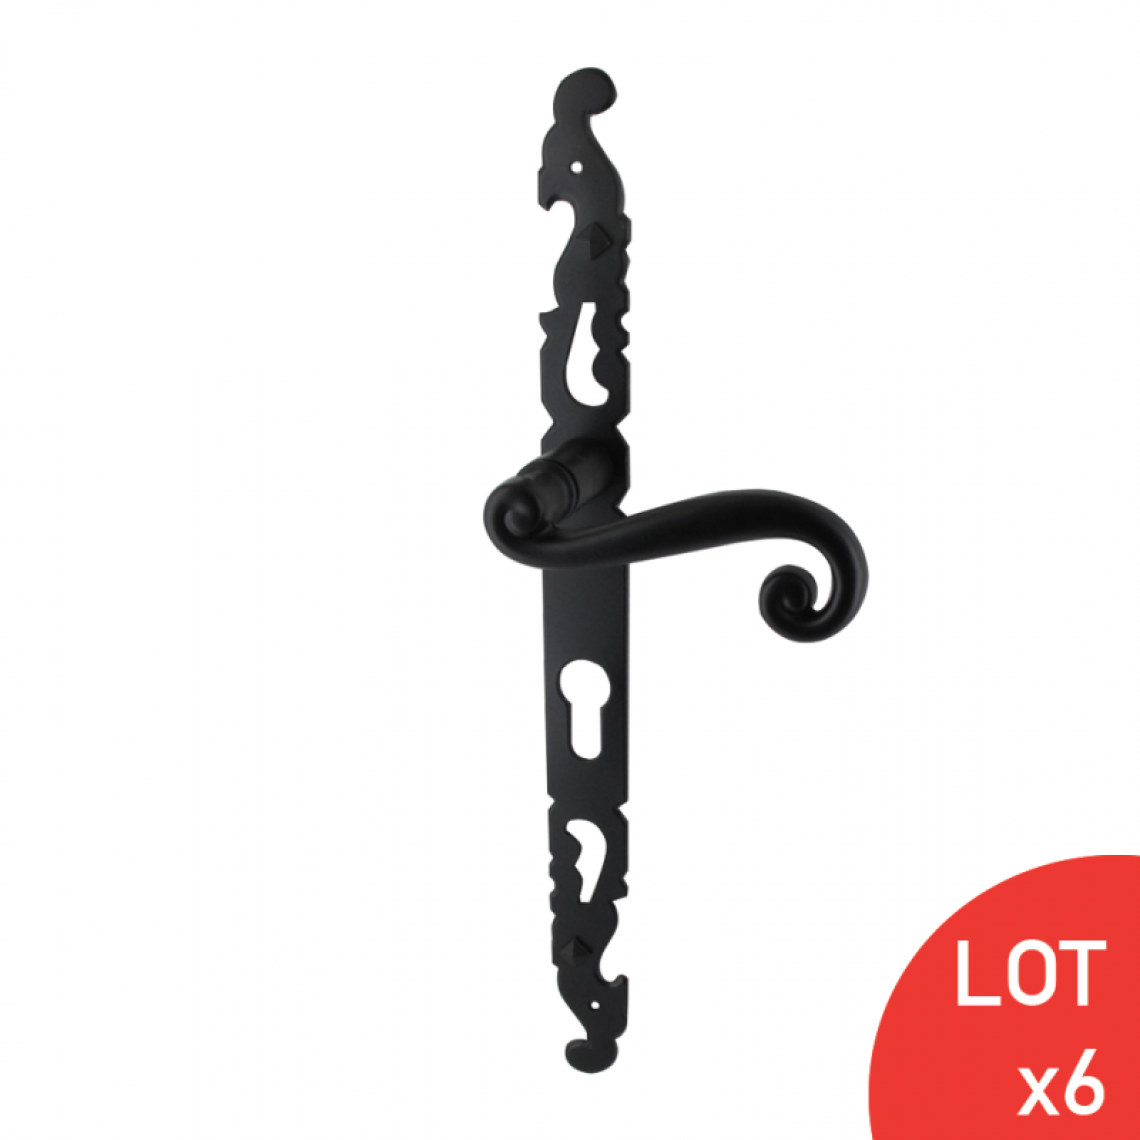 Sama - Poignées étroites COQ noir saillie rehaussée cylindre IG 330X28mm x6 - Poignée de porte